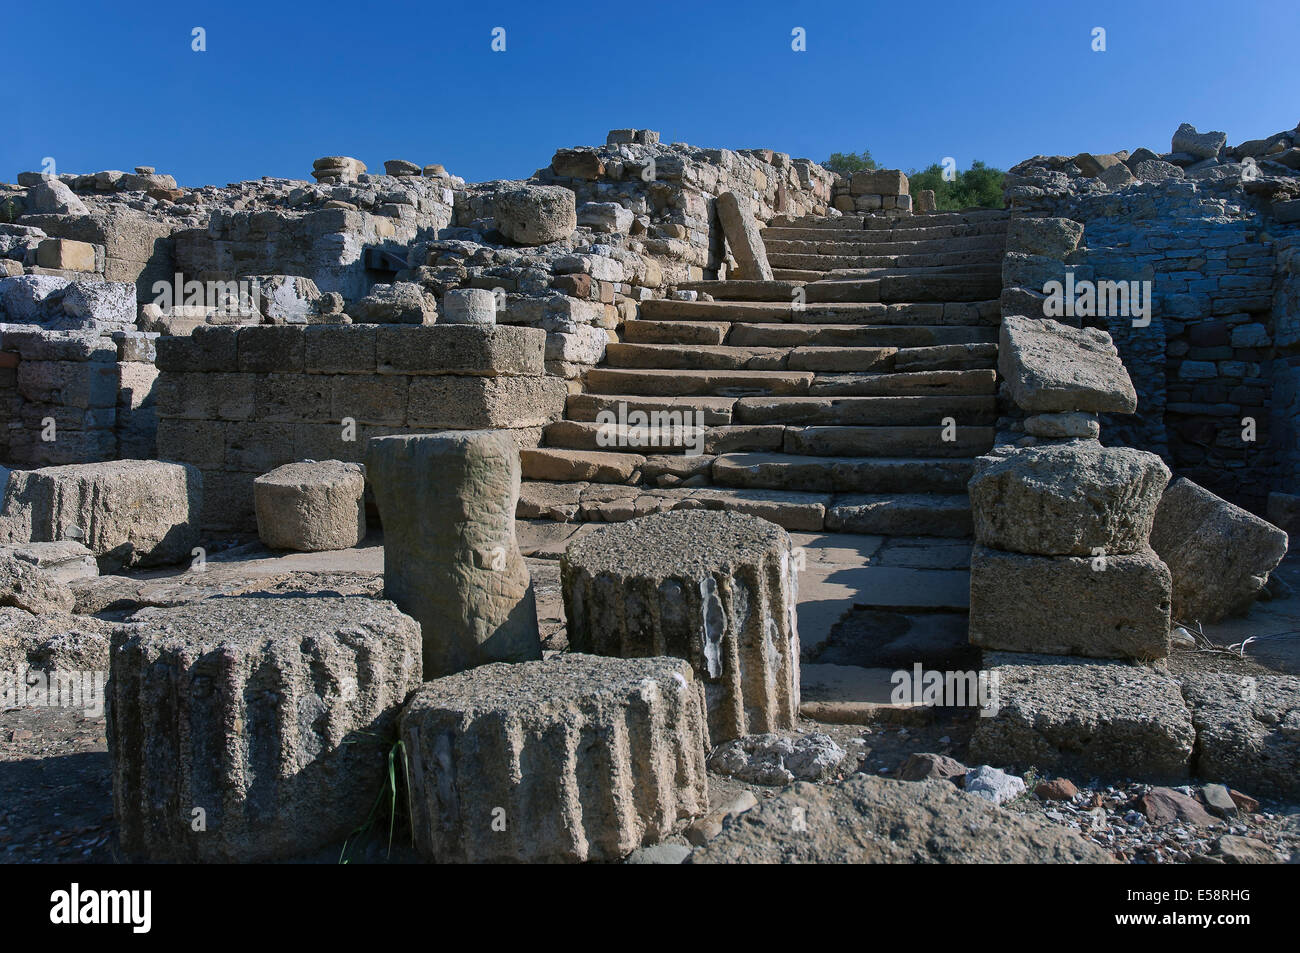 Le rovine romane di Carteia - Tempio di scale, San Roque, Cadice-provincia, regione dell'Andalusia, Spagna, Europa Foto Stock